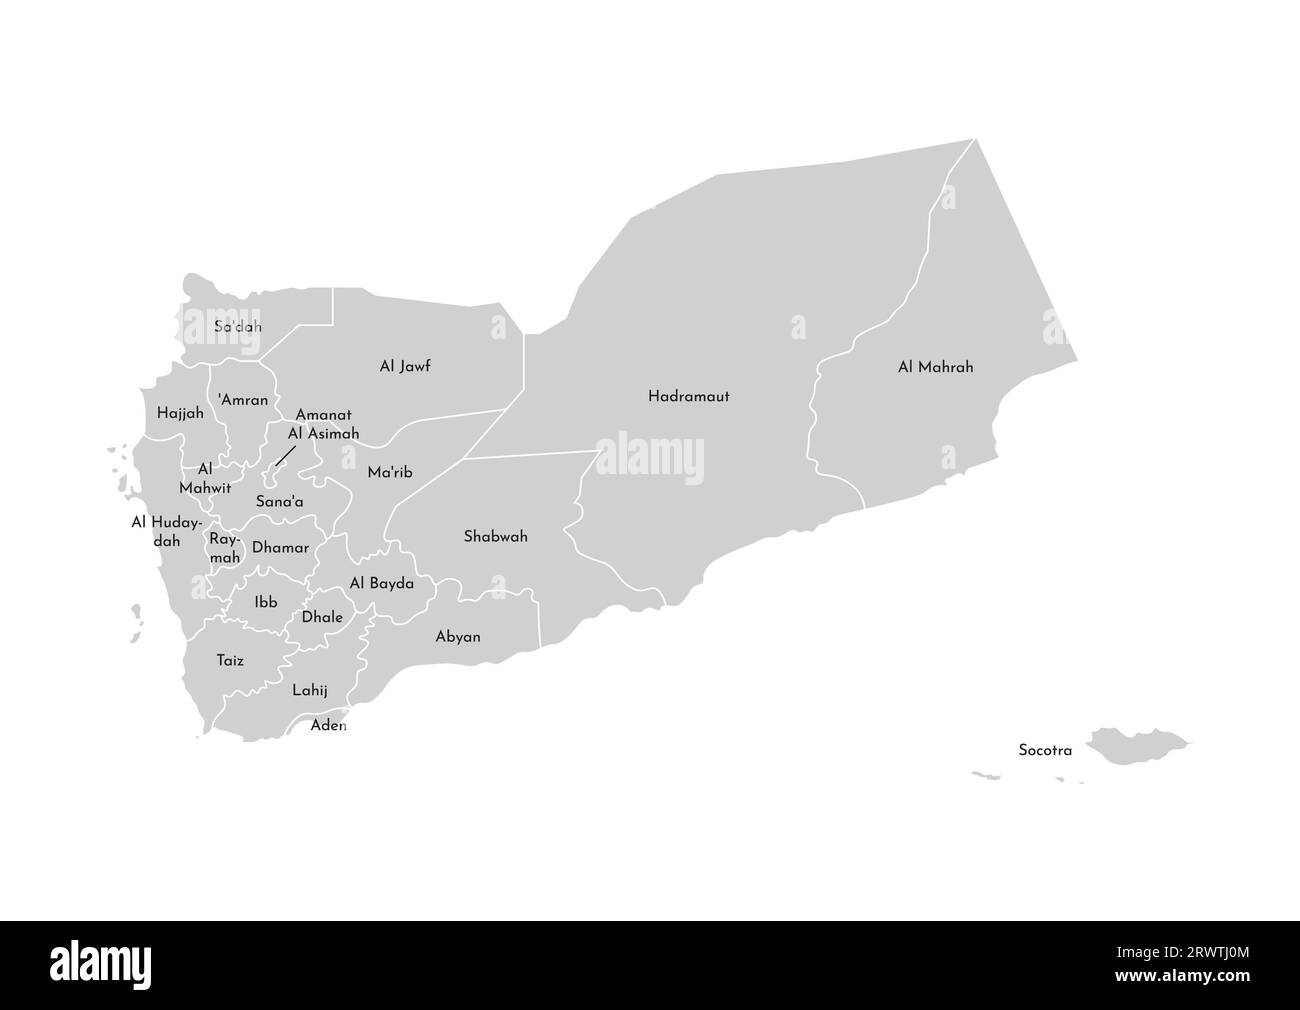 Vektorisolierte Darstellung einer vereinfachten Verwaltungskarte Jemens. Grenzen und Namen der Regionen (Gouvernements). Graue Silhouetten. Weiße Omelettes Stock Vektor